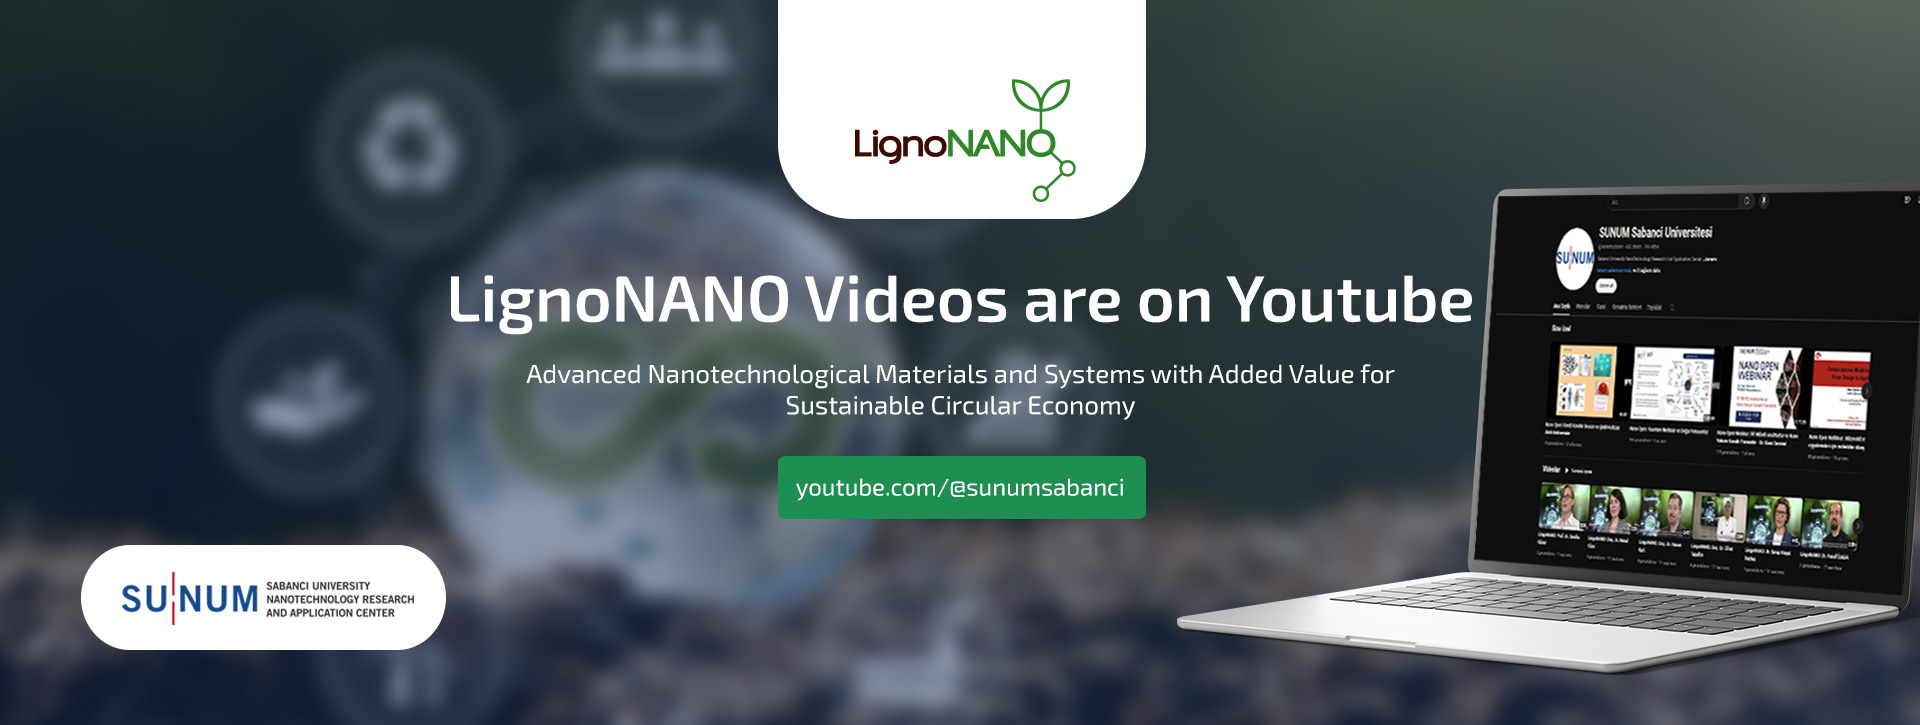 LignoNANO Videos are on Youtube